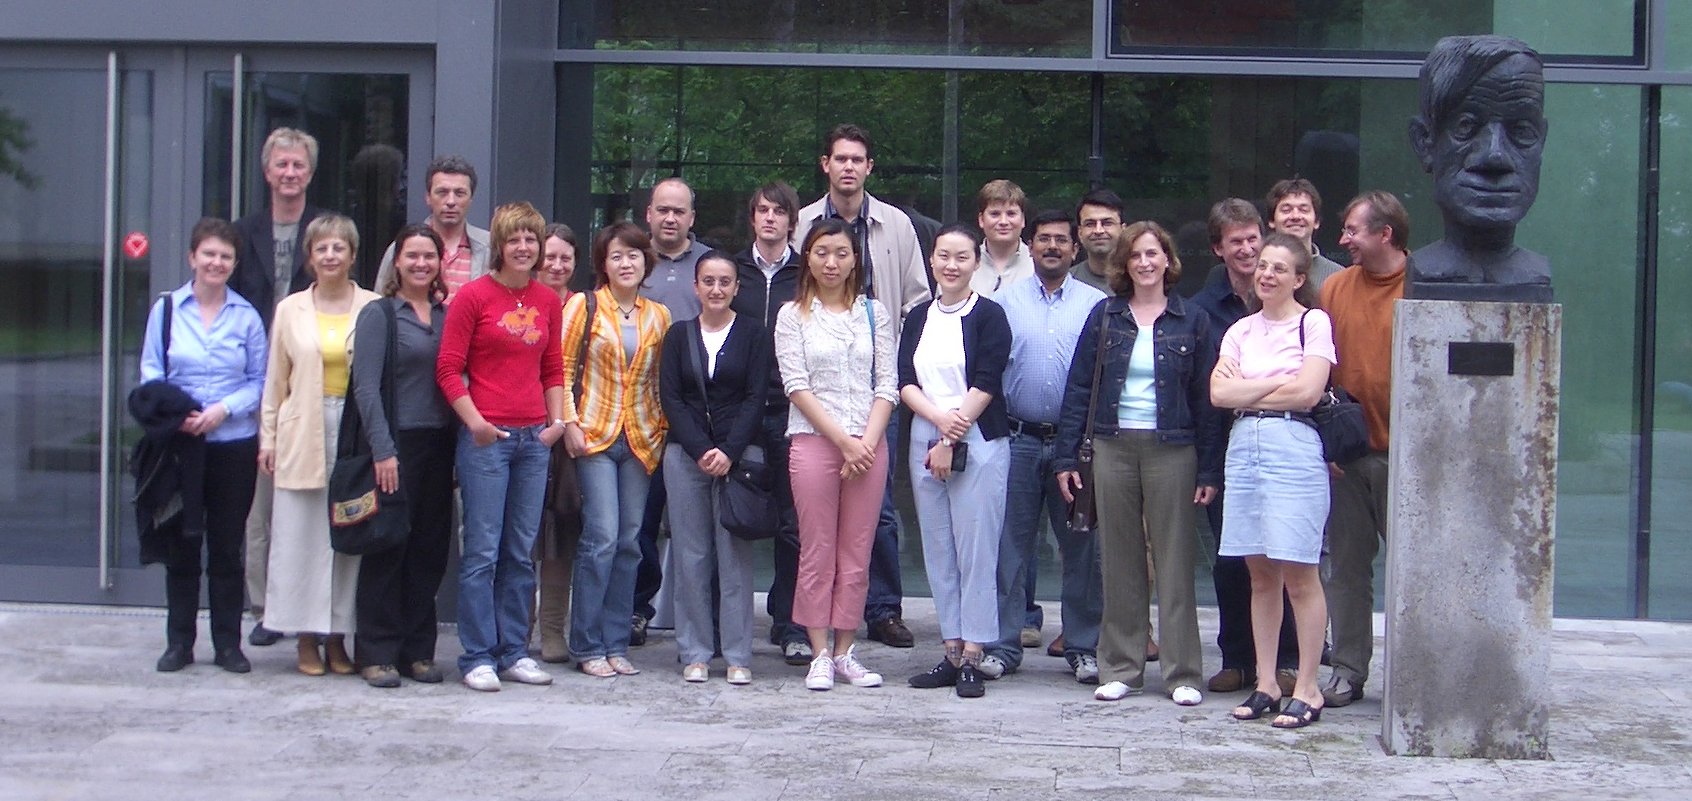 The 2005 Course Participants